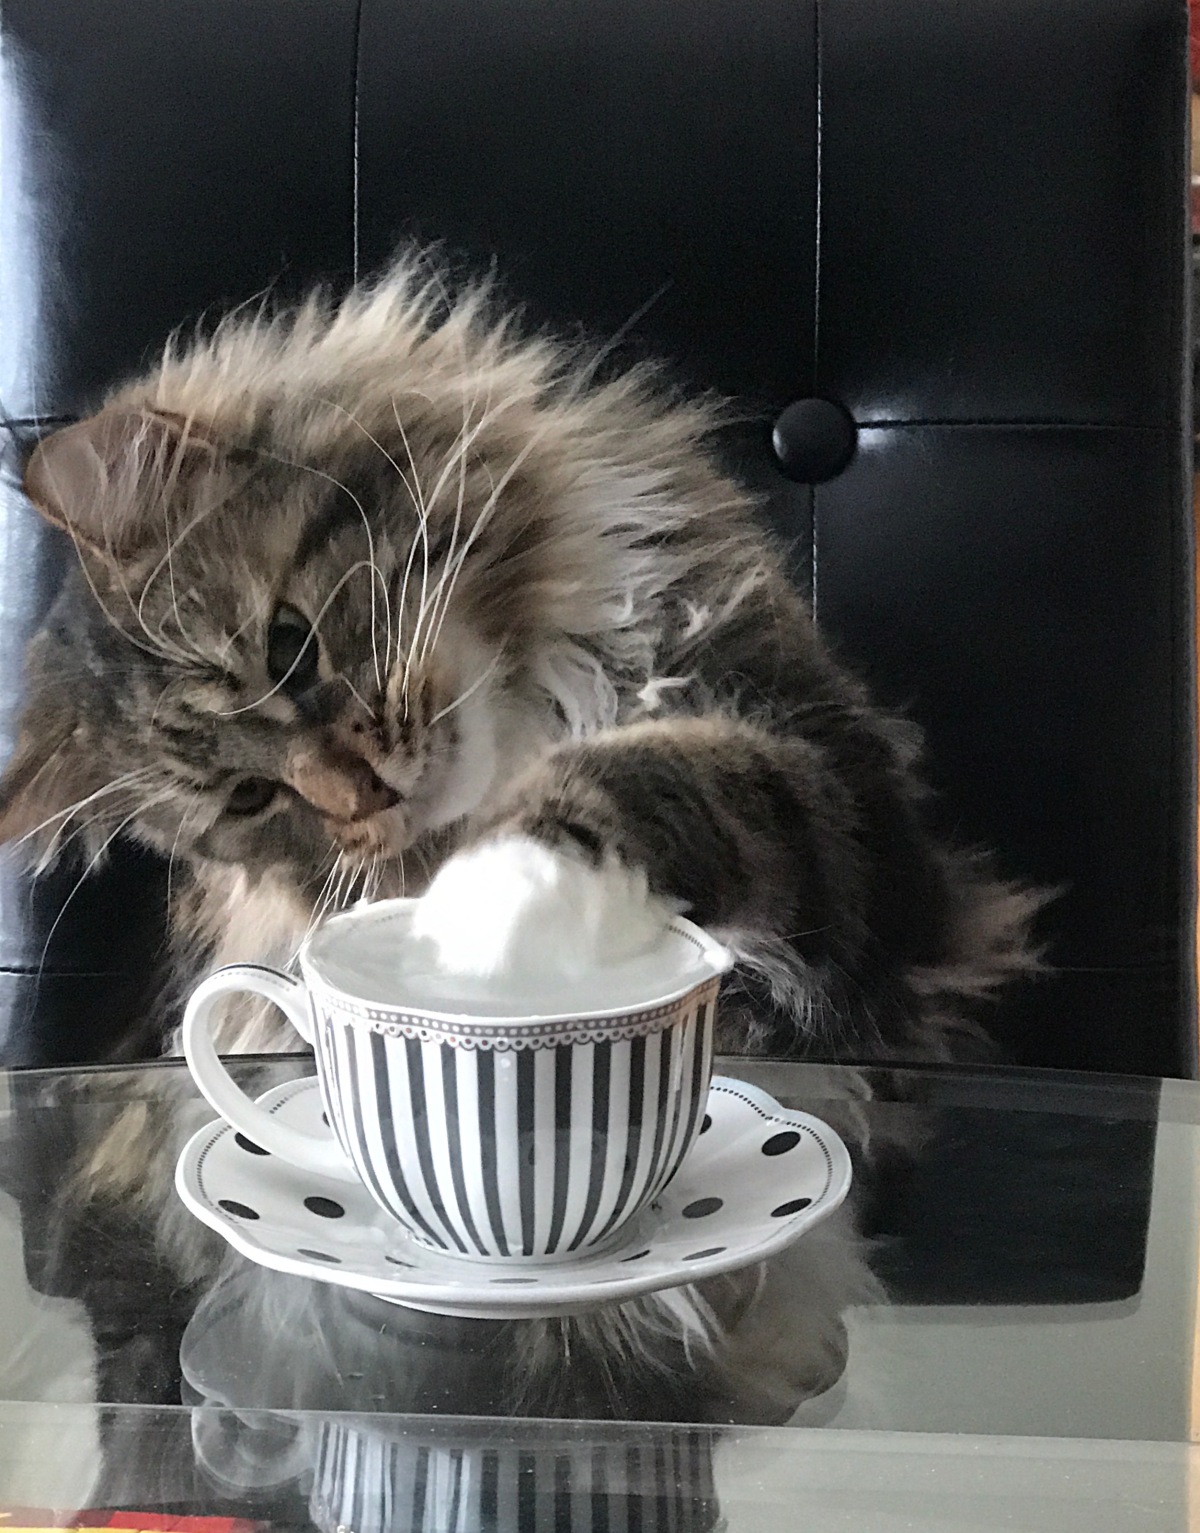 A Cat Shares a Tea Joke